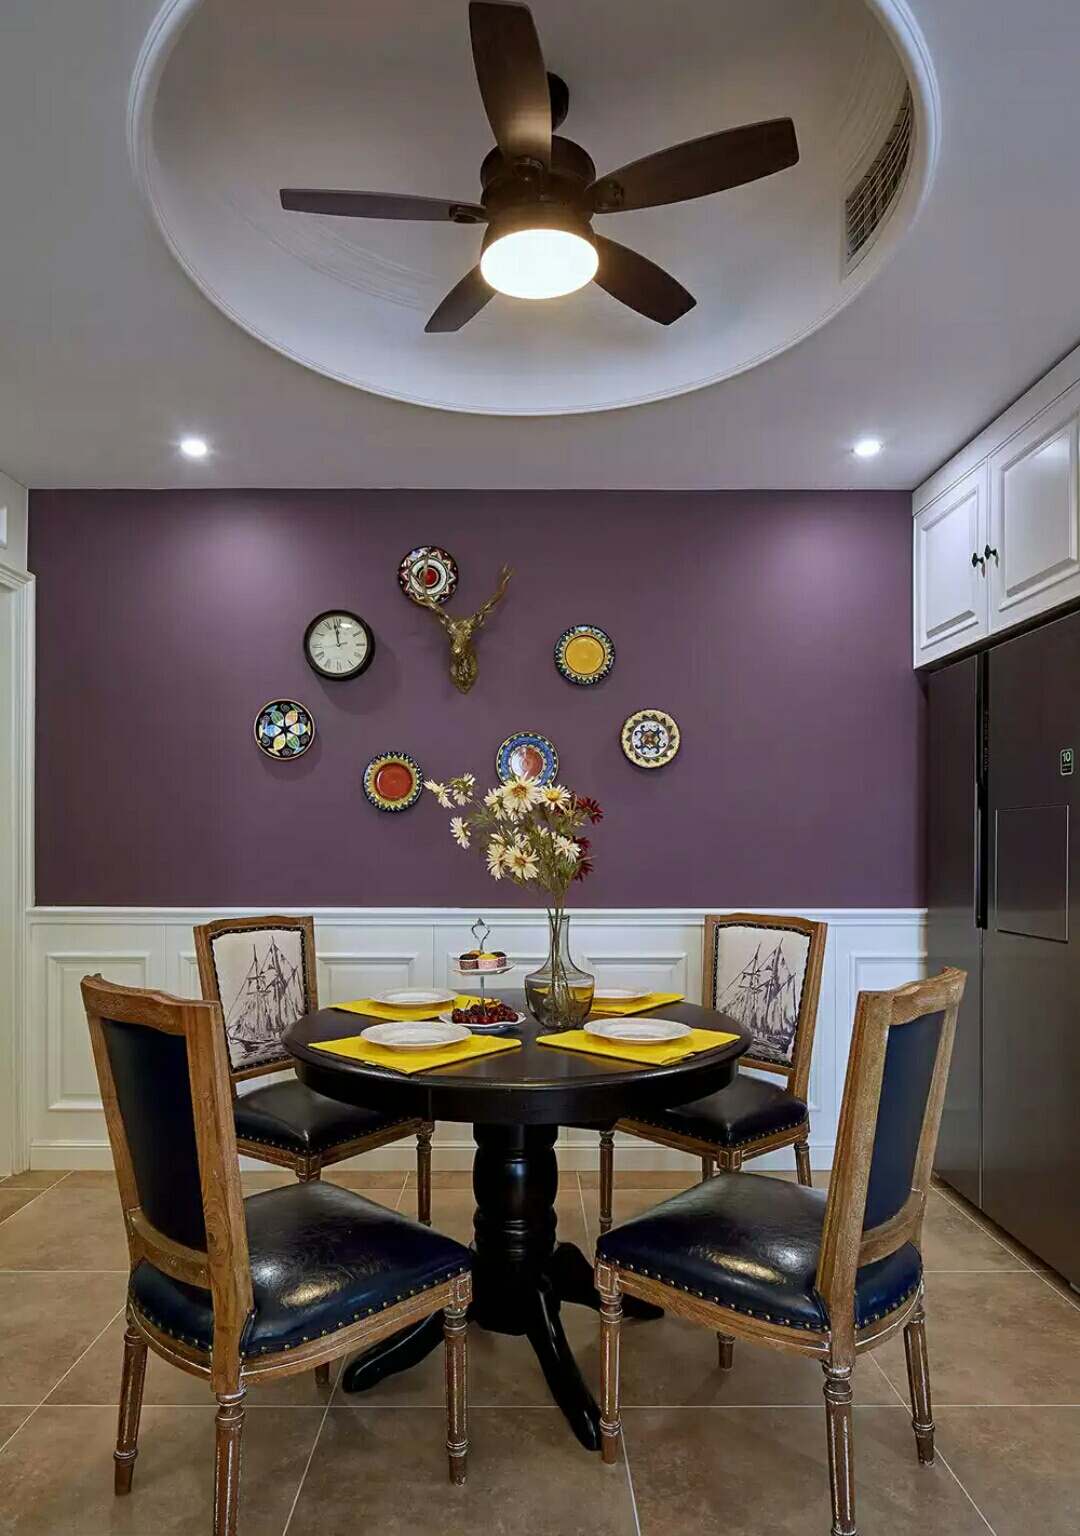 蓝色皮料与紫色背景墙的搭配，充满异域梦幻的格调，瓷砖与实木材质表面具有亚光的效果，使空间的质感变得细腻柔软，彩色挂盘与精巧的花呼应，点缀出日常饮食中的浪漫